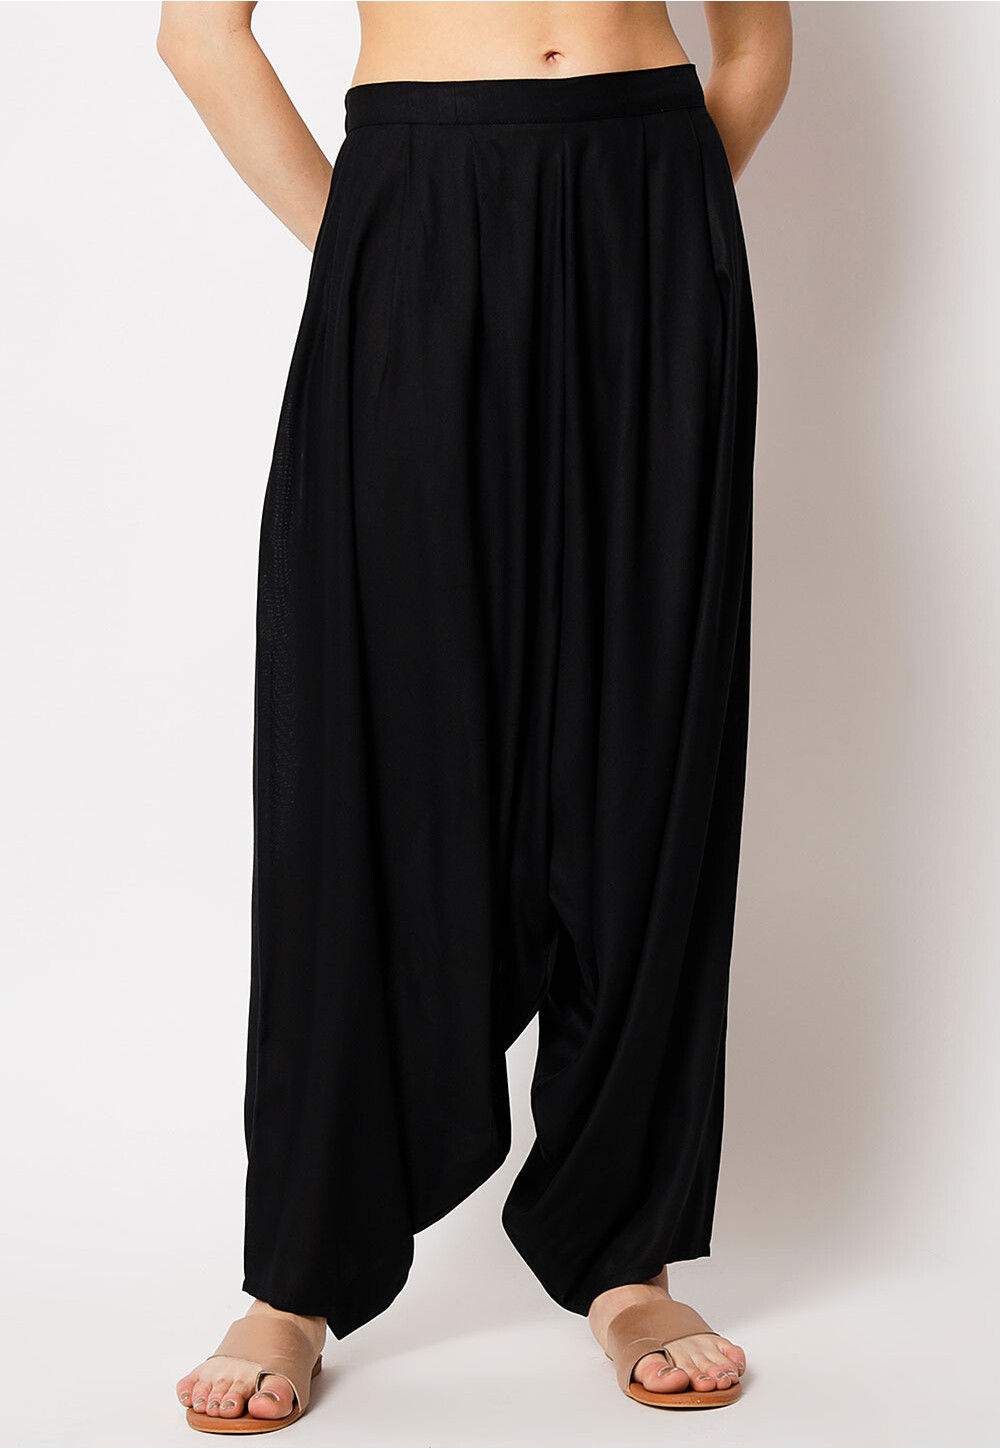 Solid Color Women's Harem Pants in Black